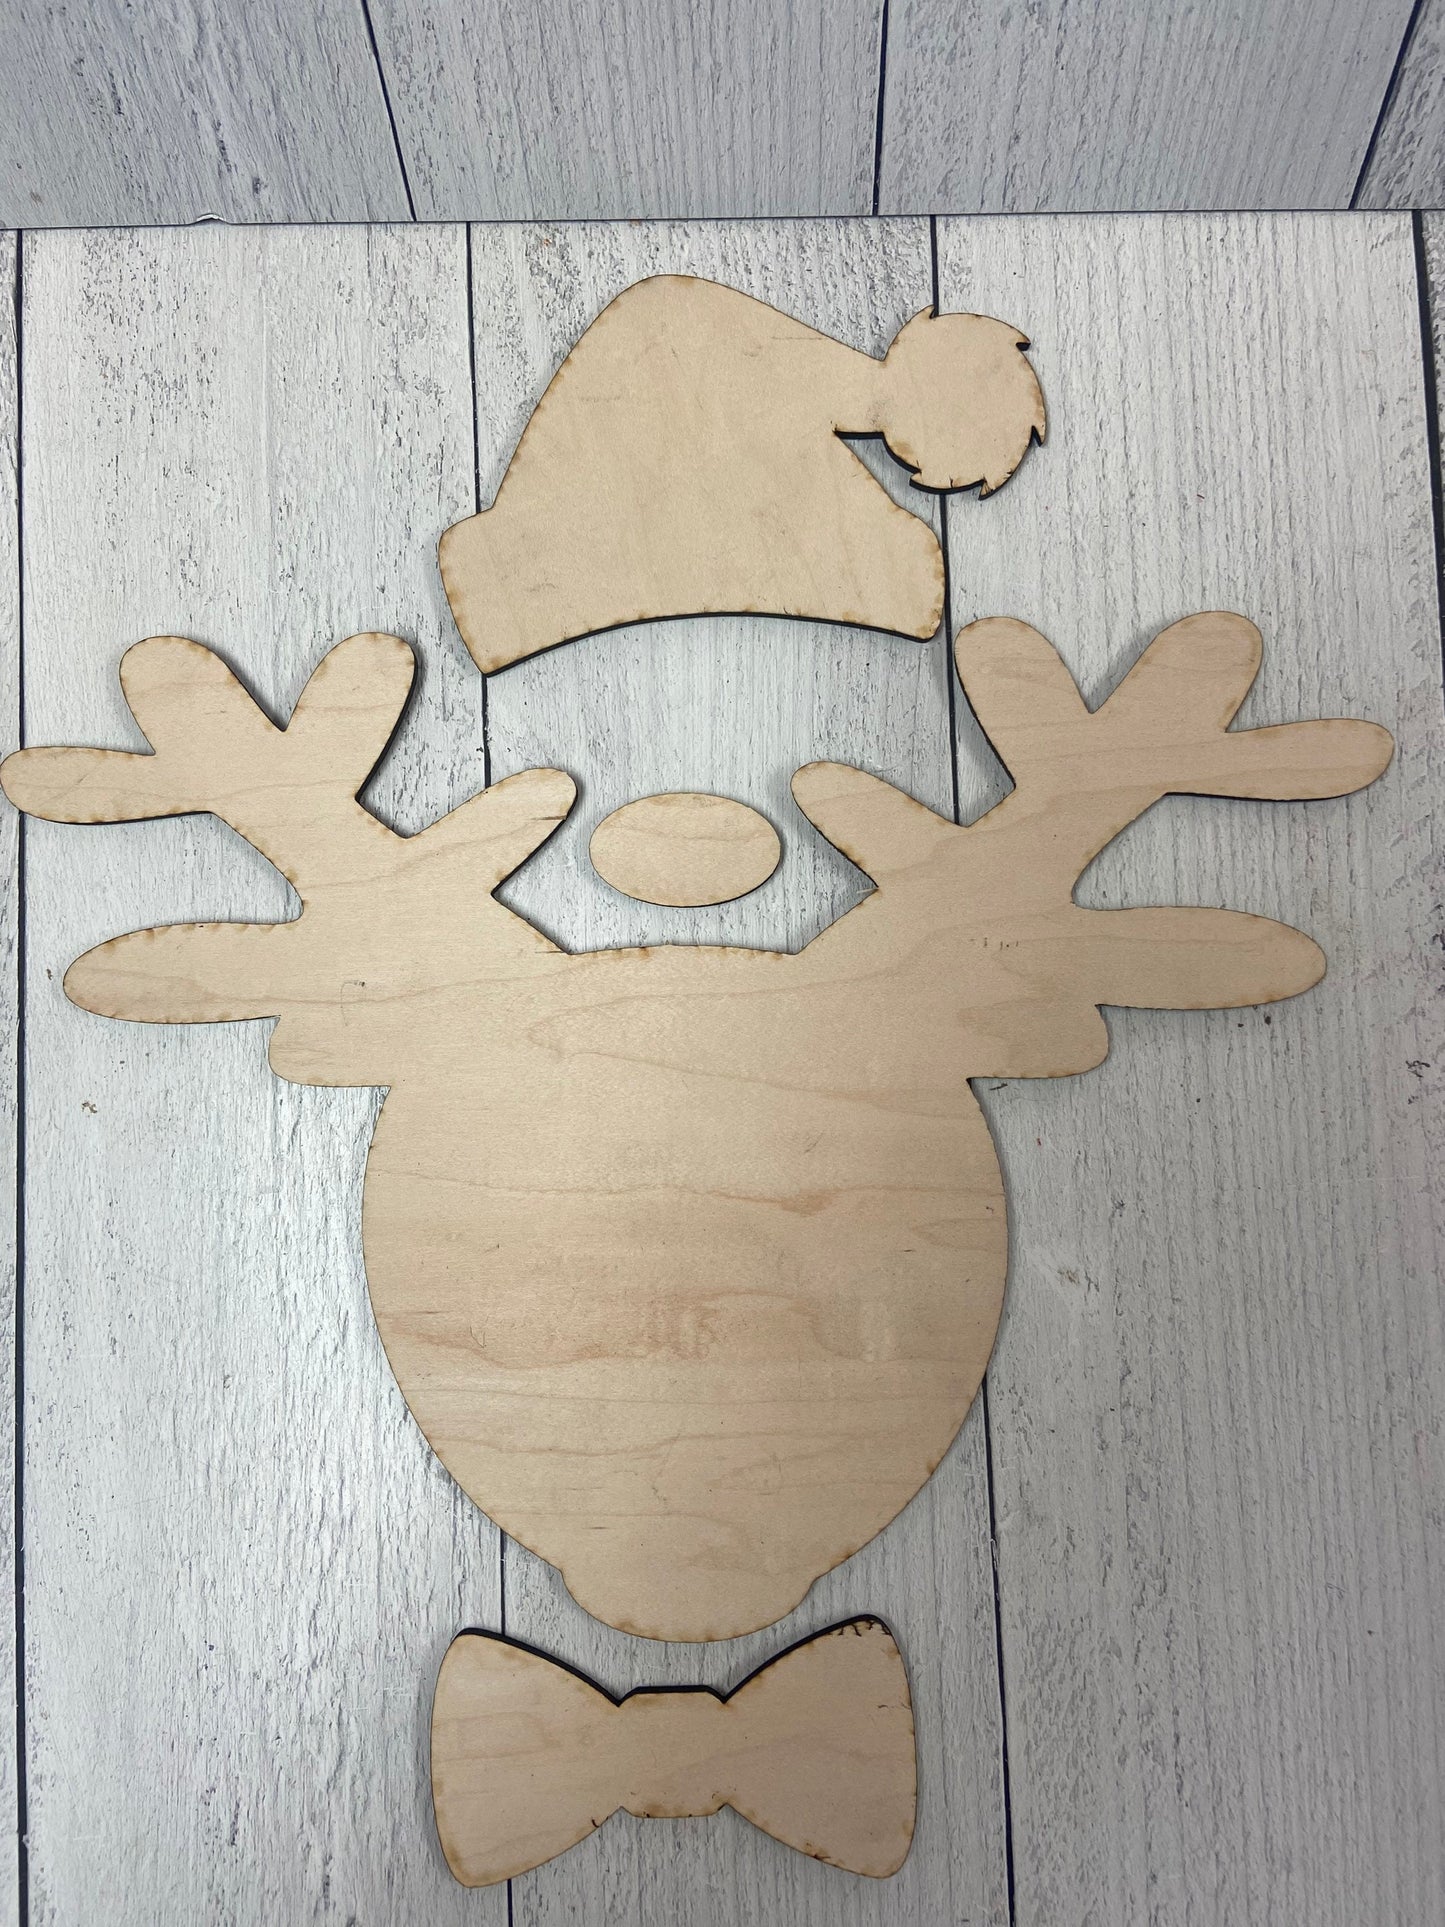 DIY Reindeer cutout! UNPAINTED